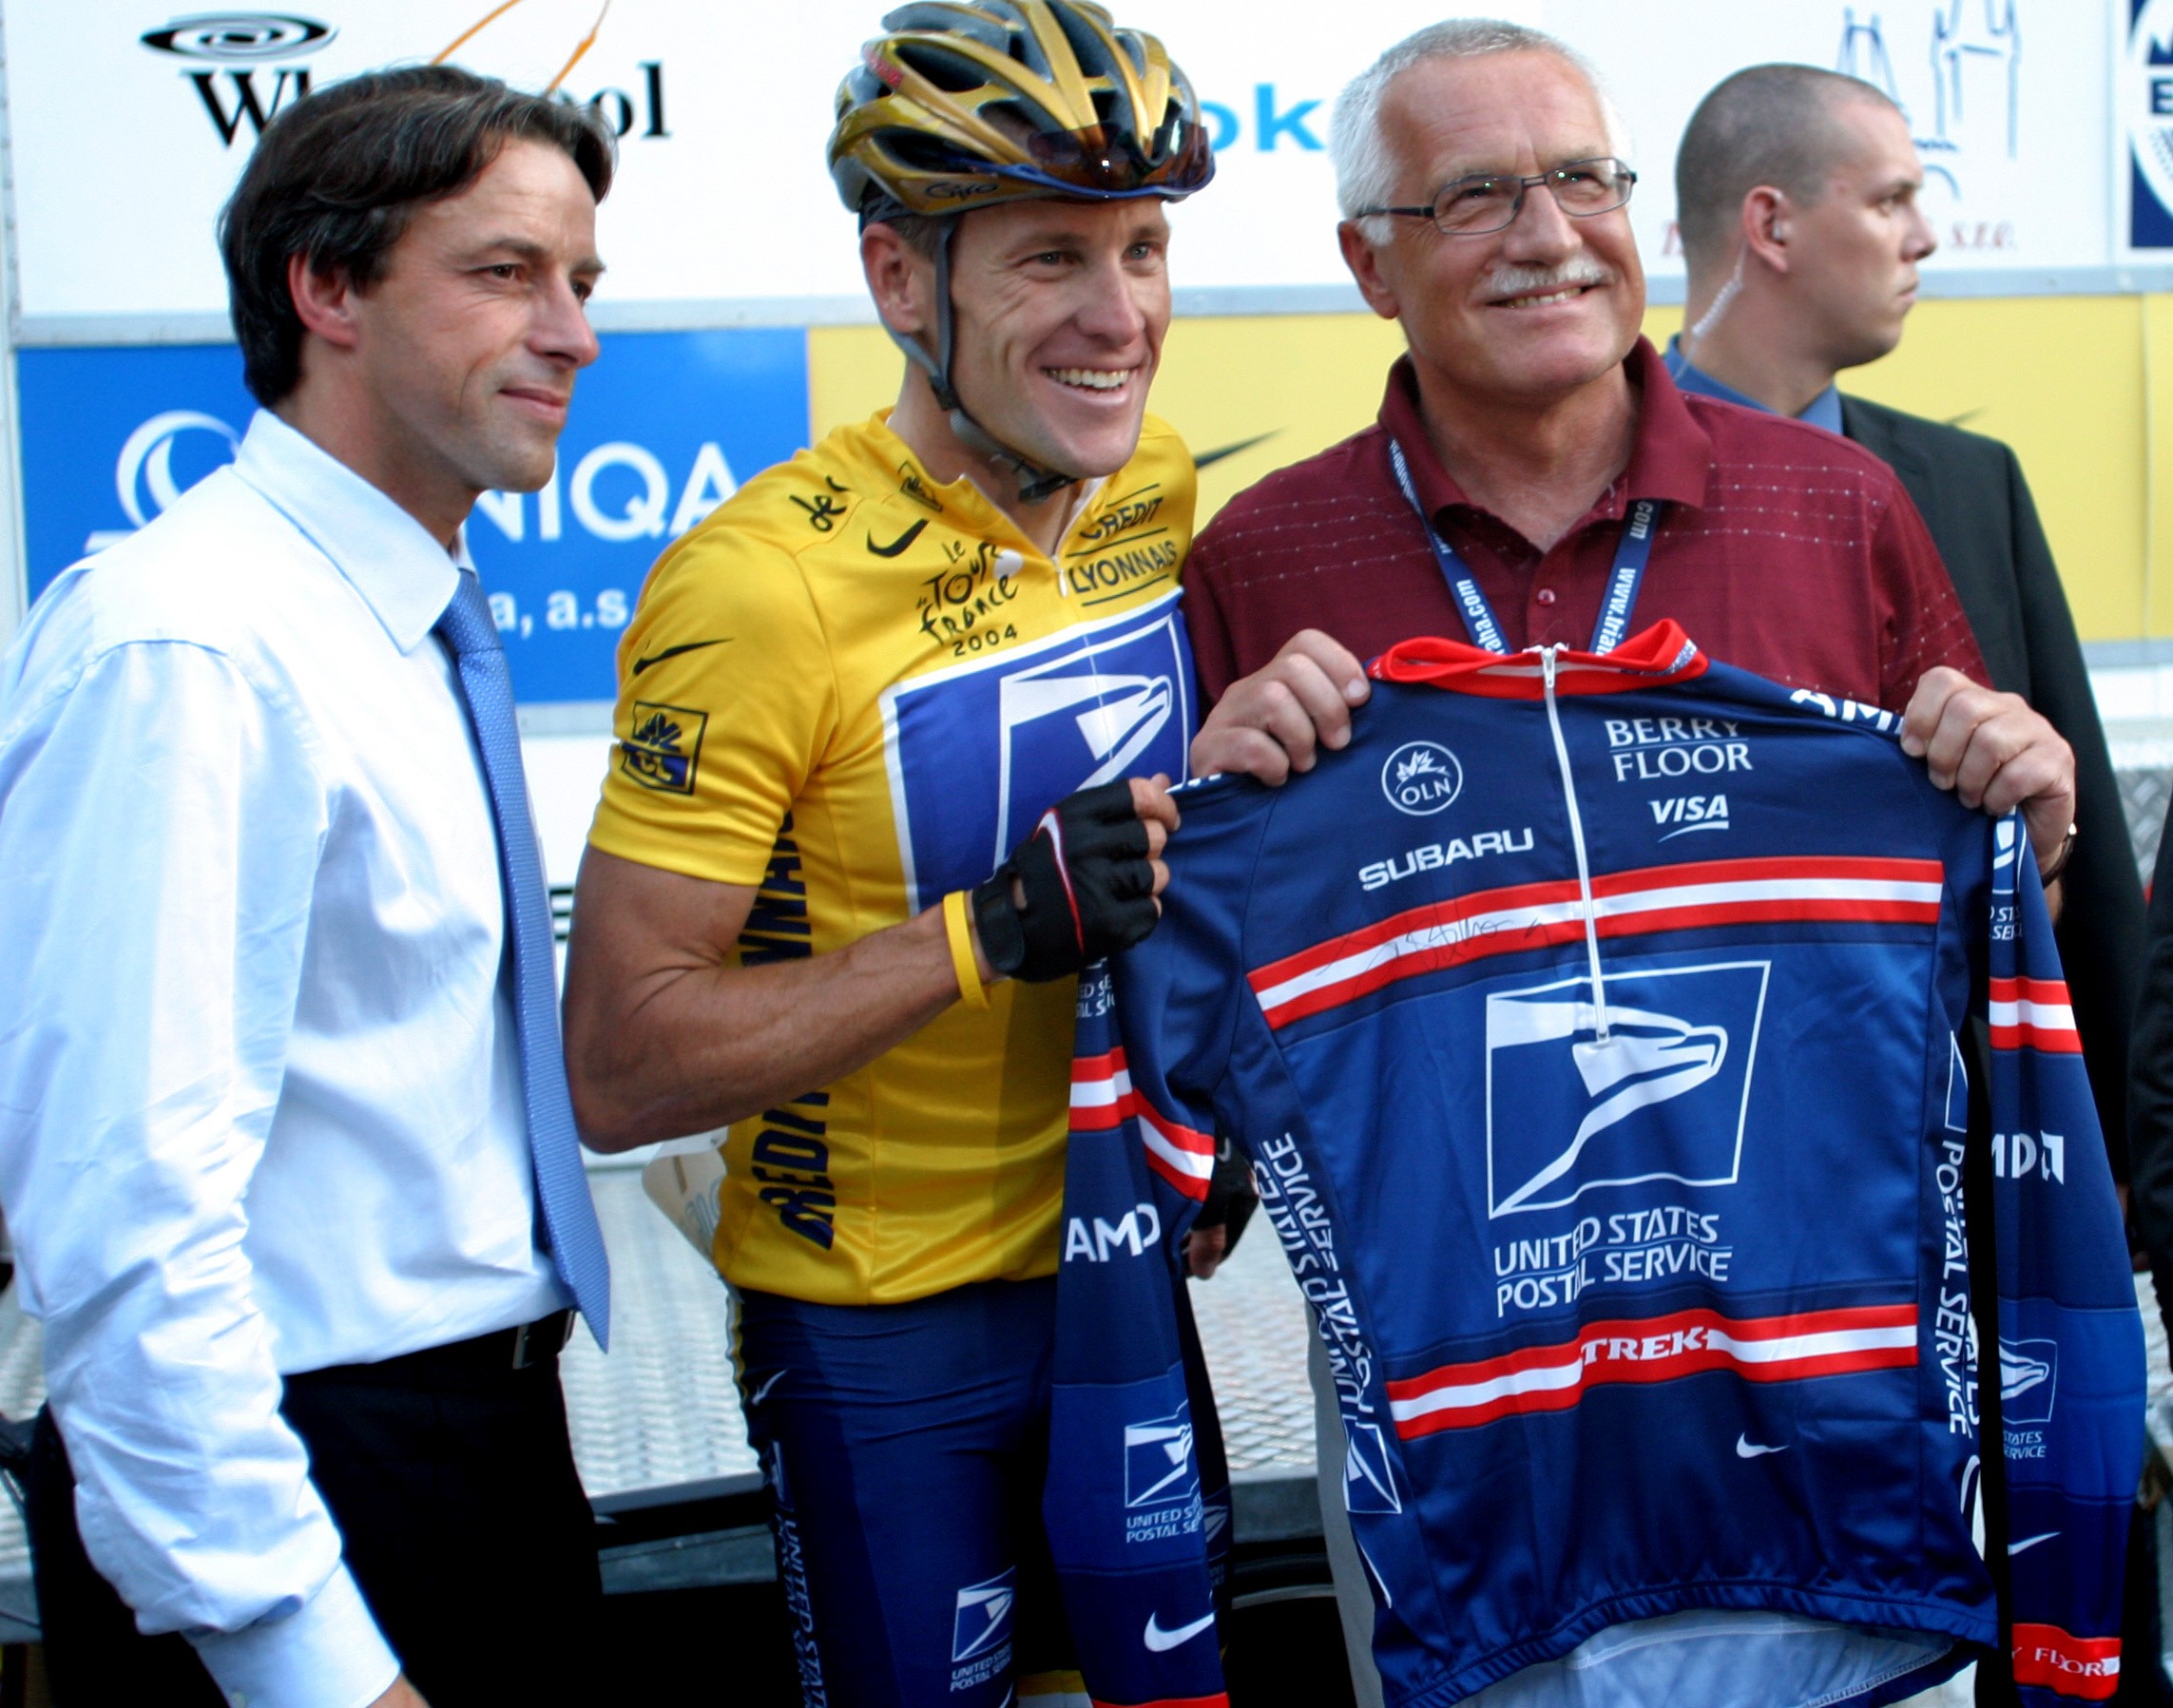 Lance Armstrong US Postal